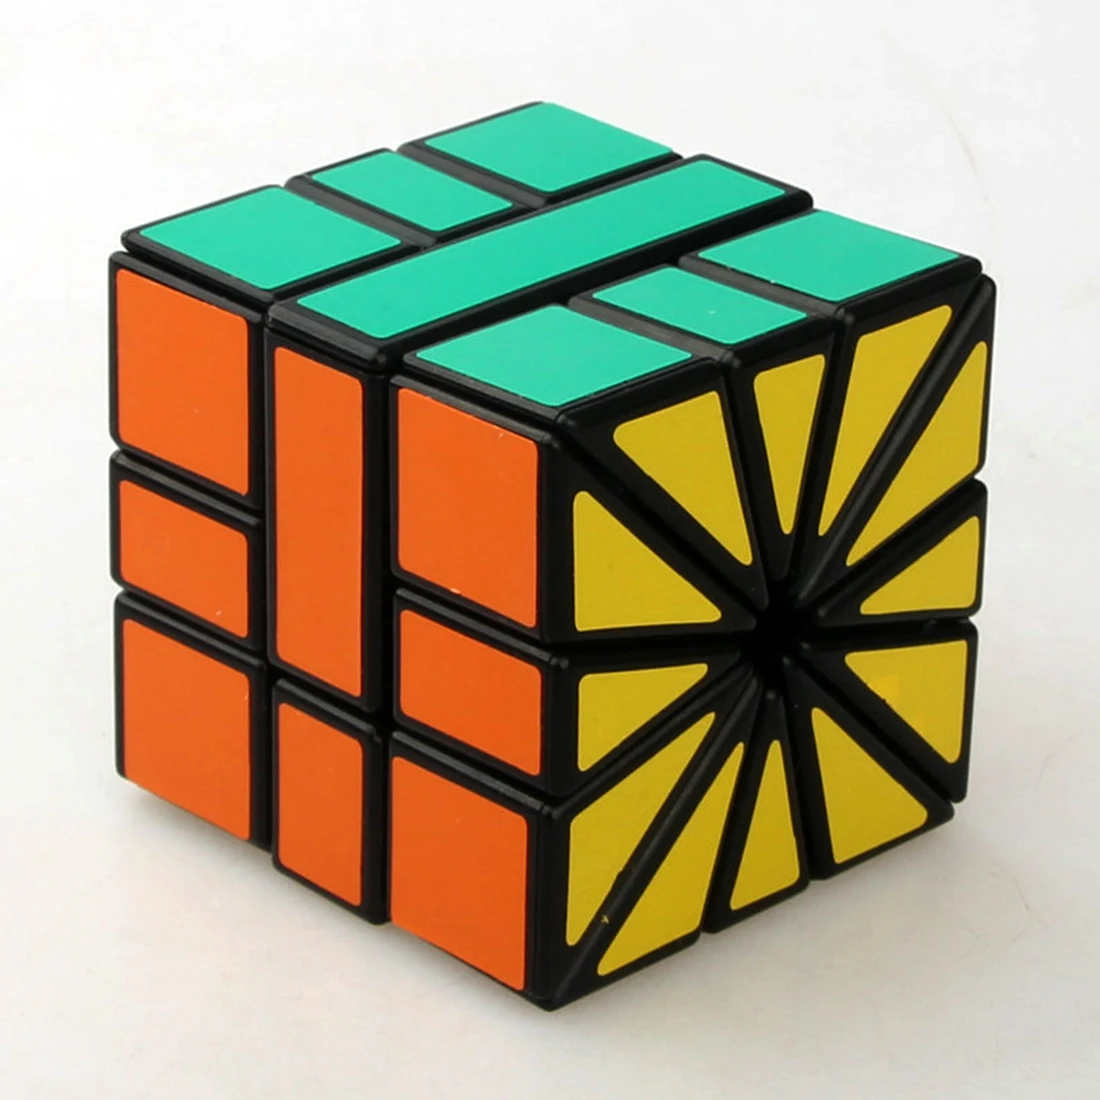 CubeTwist квадратный-2 SQ2 скоростной магический куб Пазлы 3X3X3 зеркальный куб Развивающие игрушки рождественские подарки для детей - Цвет: Black